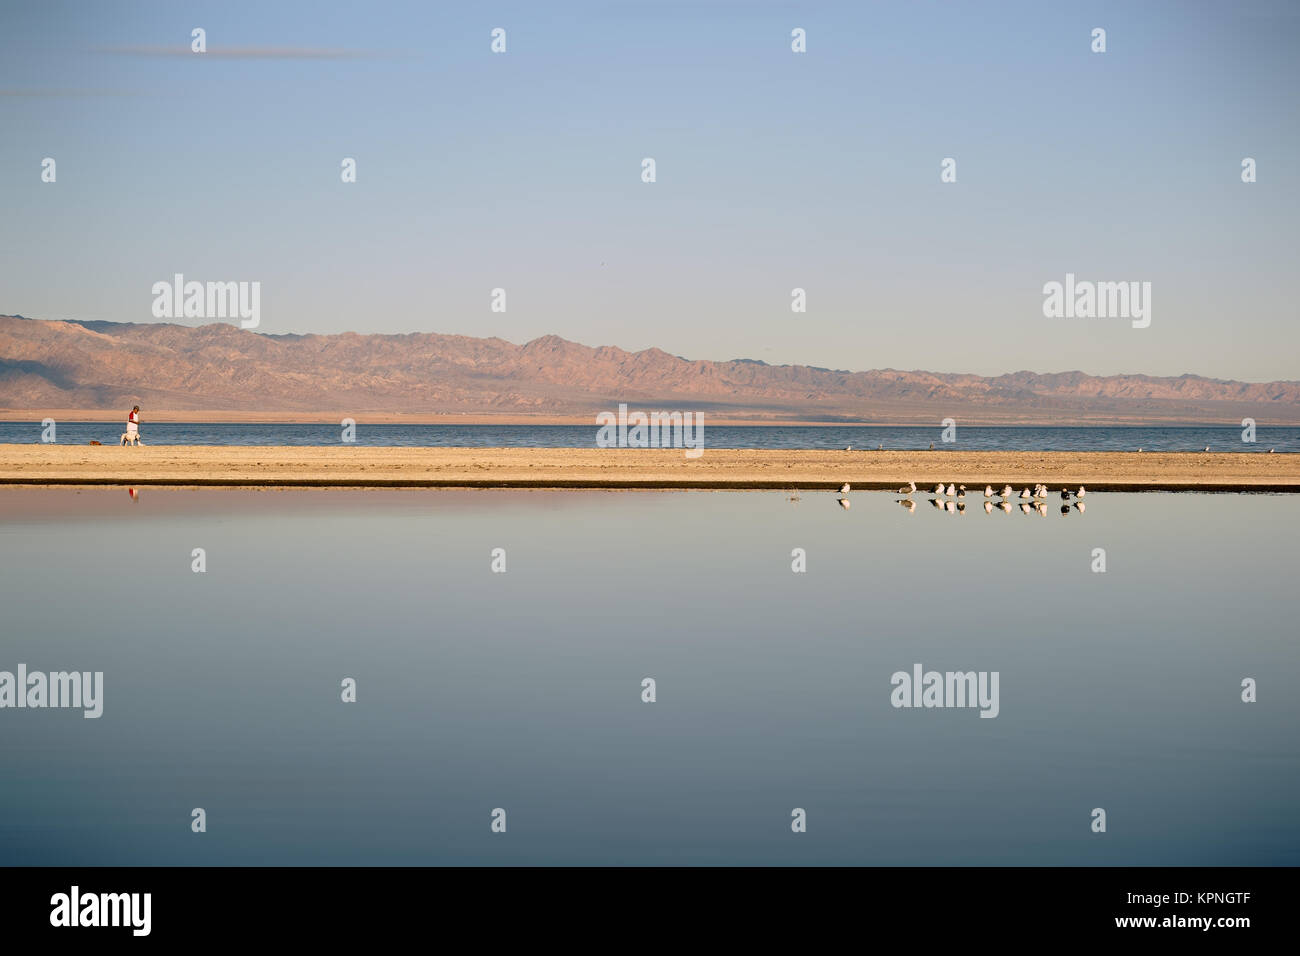 Ein Fußgänger geht in der Ferne mit seinen Hunden am Saltonsee spazieren, in dem sich eine Brutkolonie von Wasservögeln im See spiegelt. Stock Photo